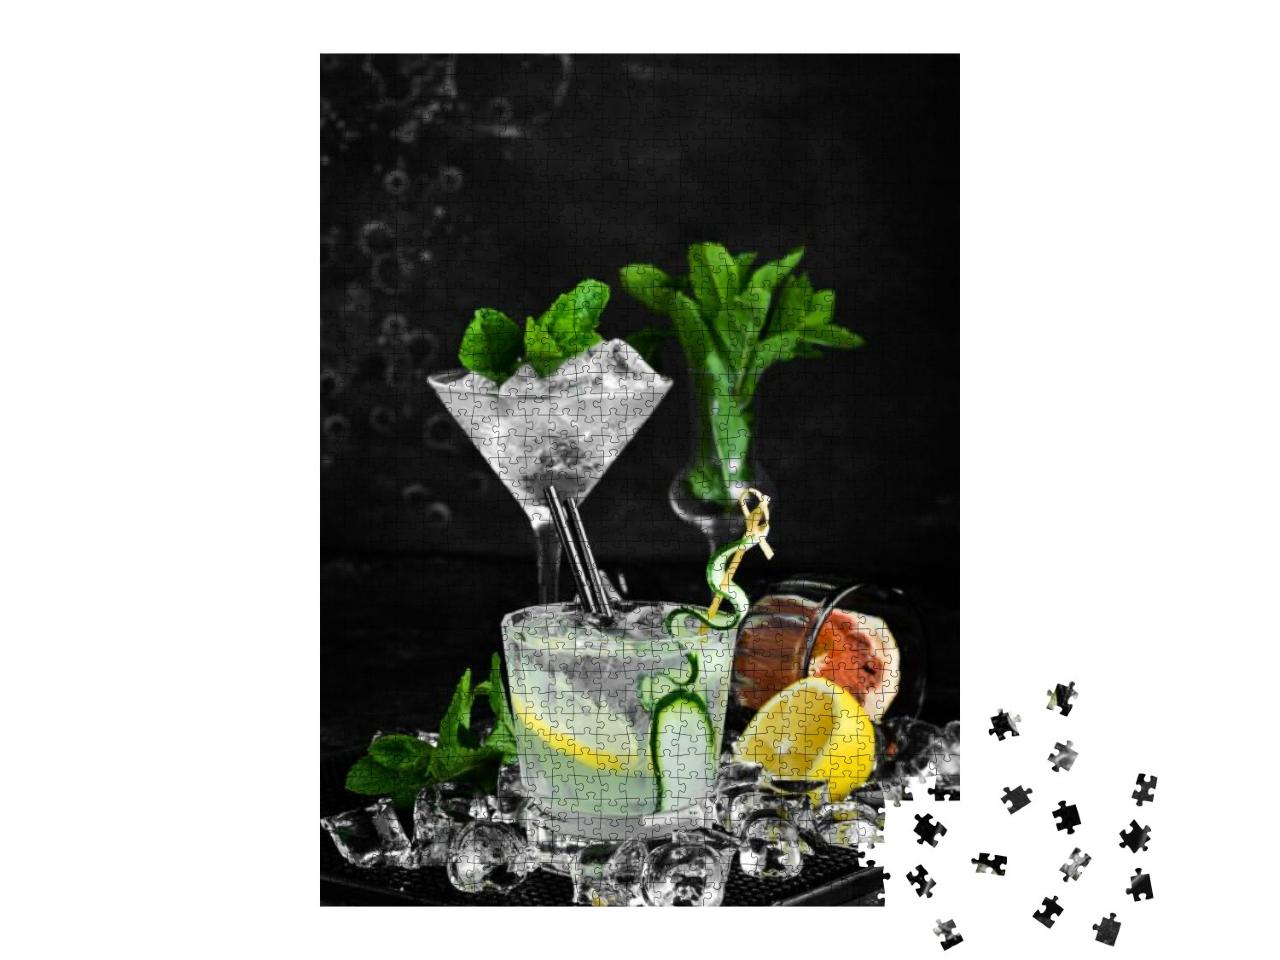 Puzzle 1000 Teile „Gin Tonic mit Gurke und Zitrone“